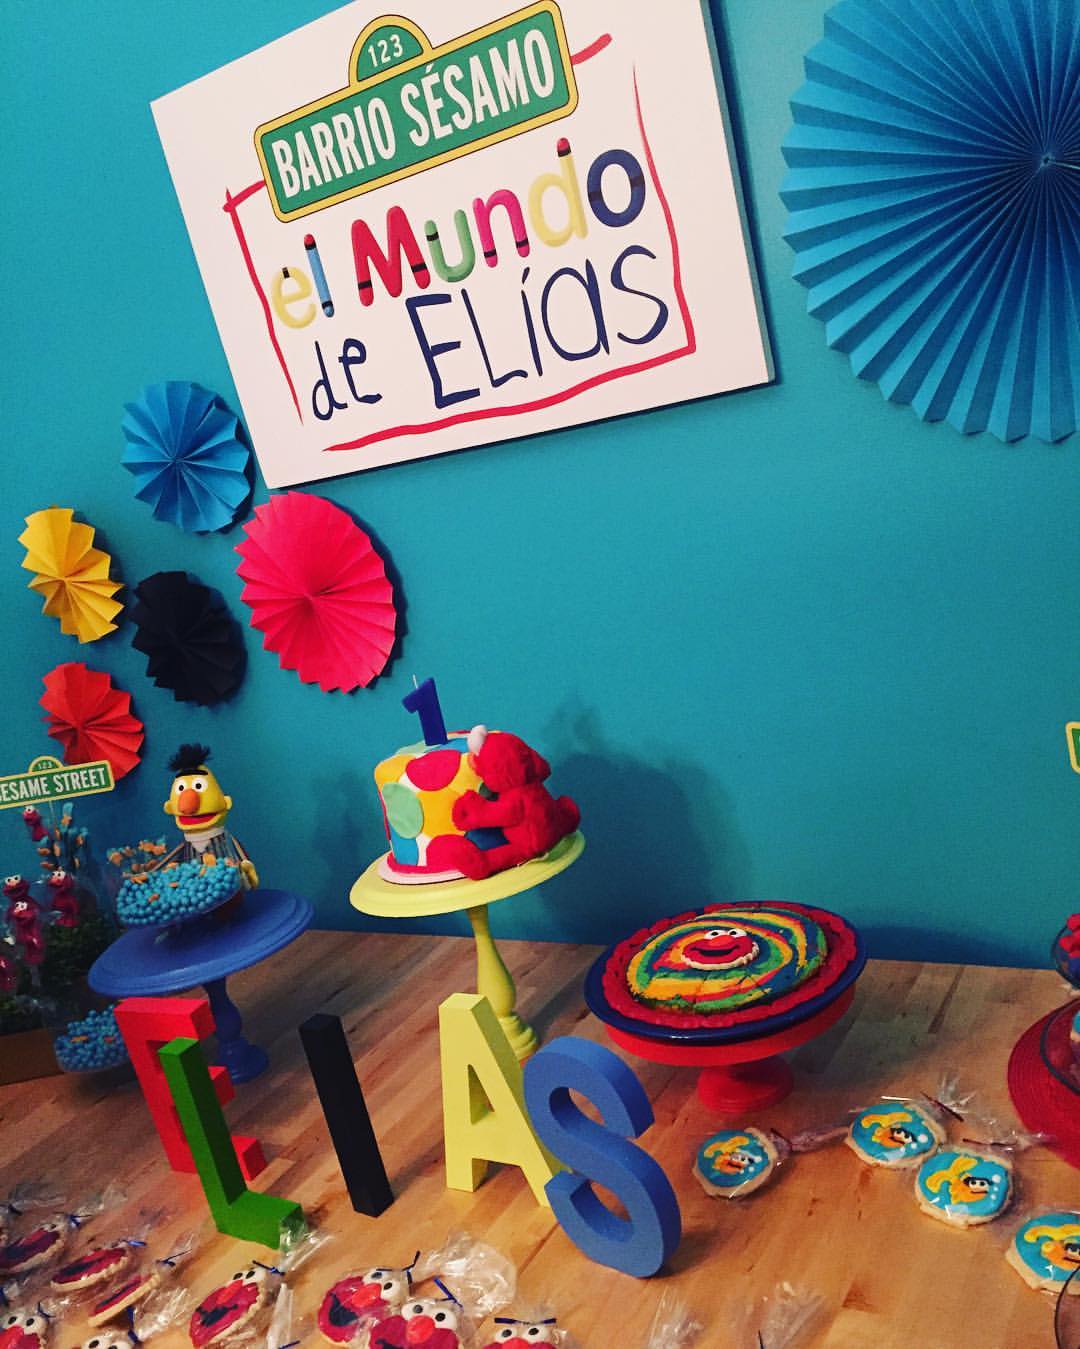 Awesome El Mundo de Elías birthday sign made by Nico